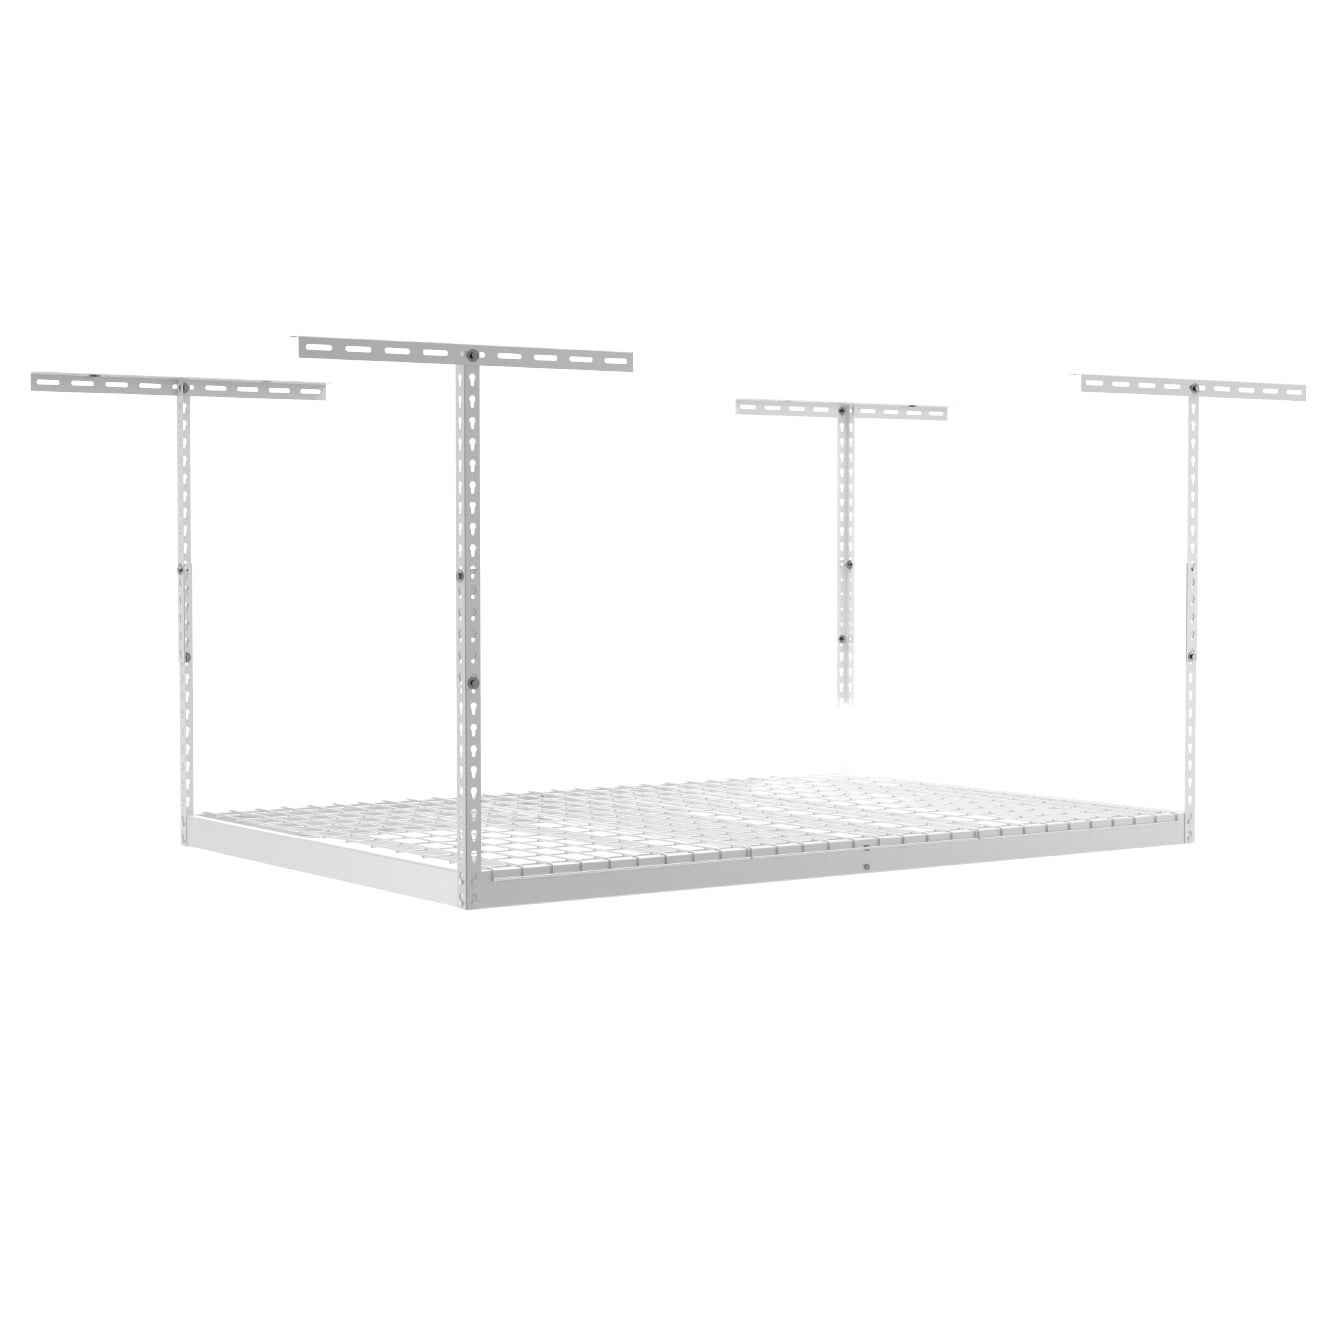 4’ x 6’ Overhead Garage Storage Rack - White / 24’ - 45’